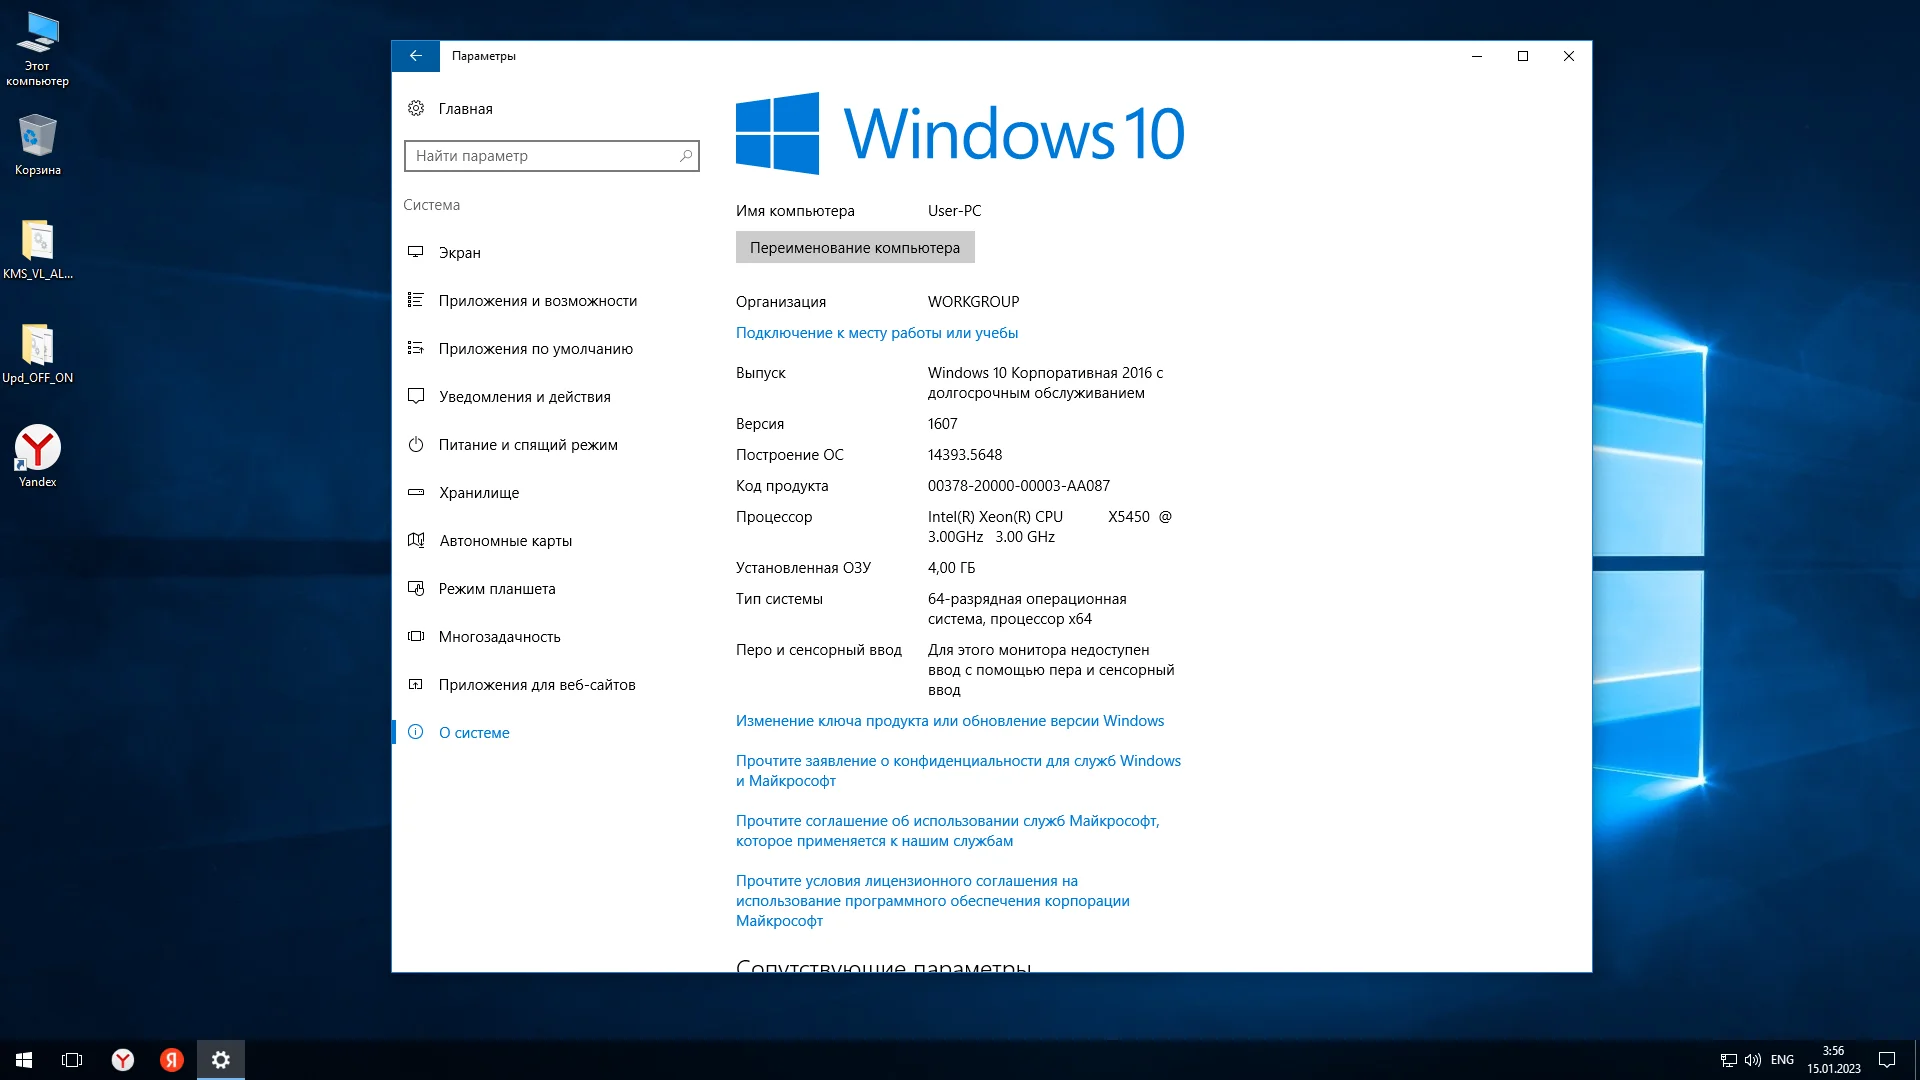 Легкая виндовс 10 64. Windows 10 версии. Windows 10 LTSB 1607 2016 x64 оригинальный. 64-Разрядная Операционная система, процессор x64. Редакции виндовс 10.